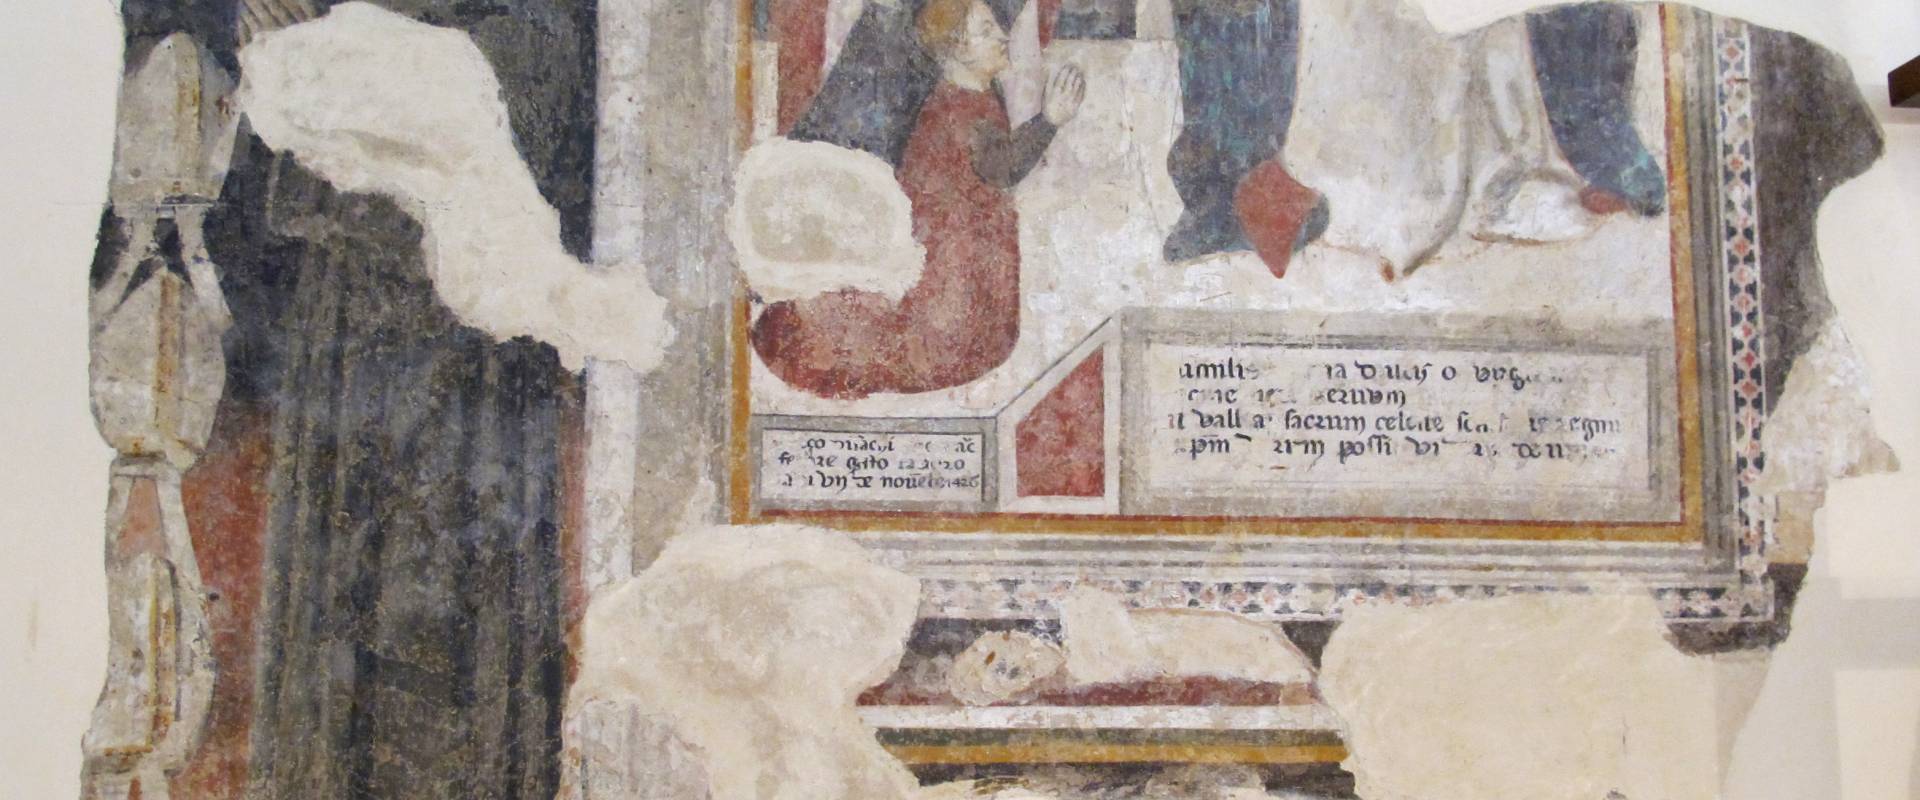 Museo della cattedrale di ferrara, sala B, affreschi foto di Sailko